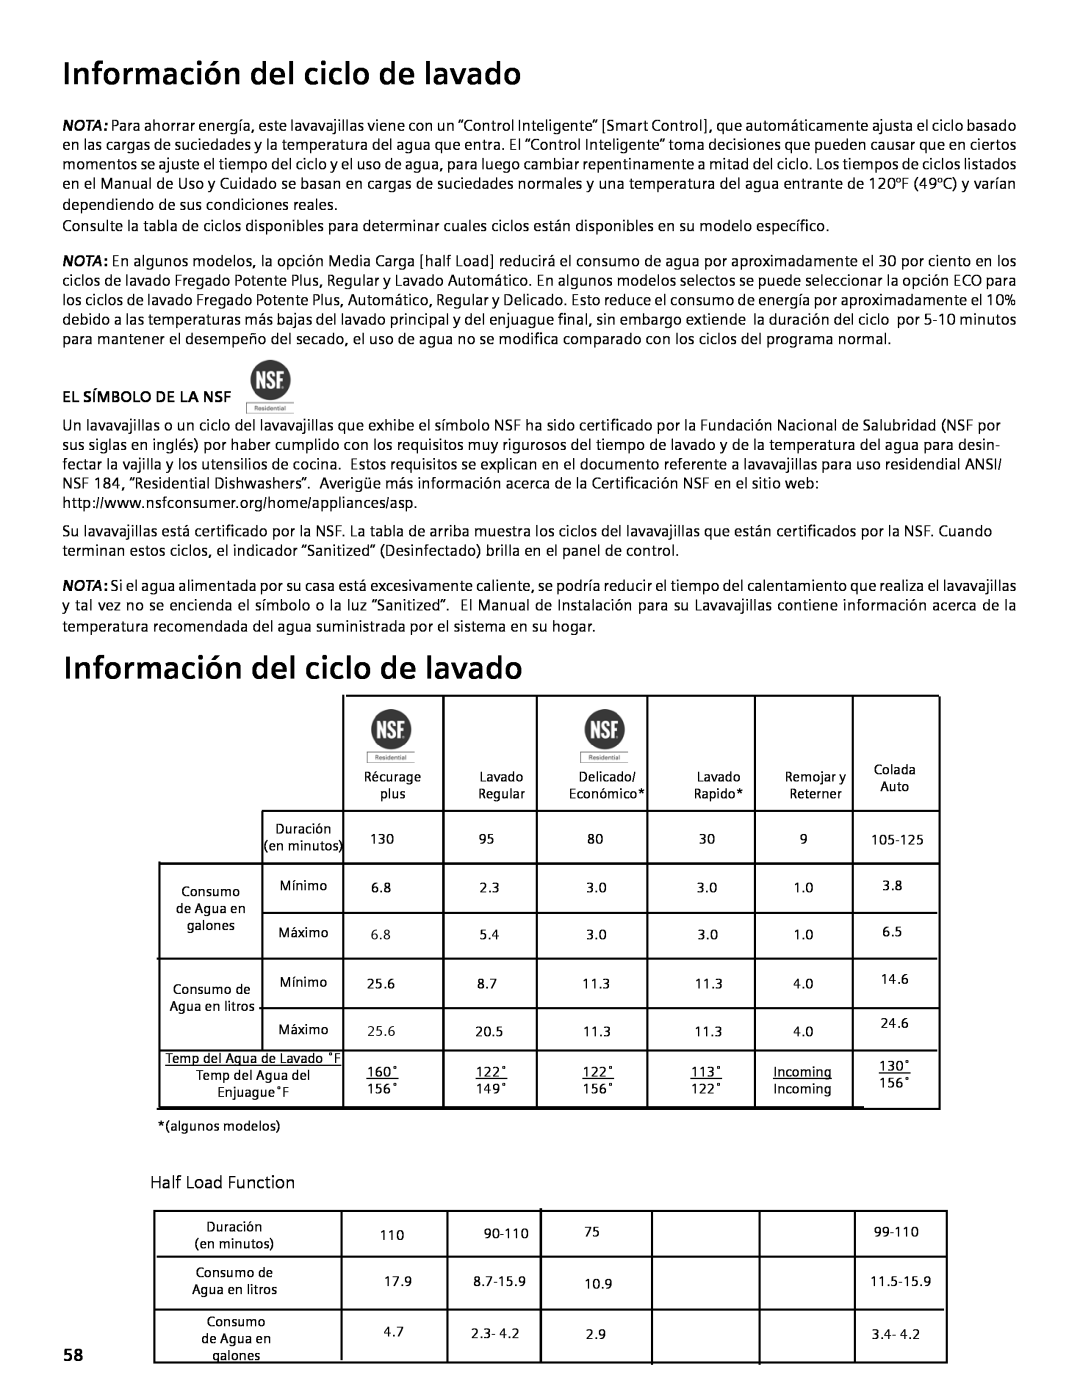 Bosch Appliances SHE4AM, SHE5AM, SHX3AM manual Información del ciclo de lavado, El Símbolo De La Nsf 